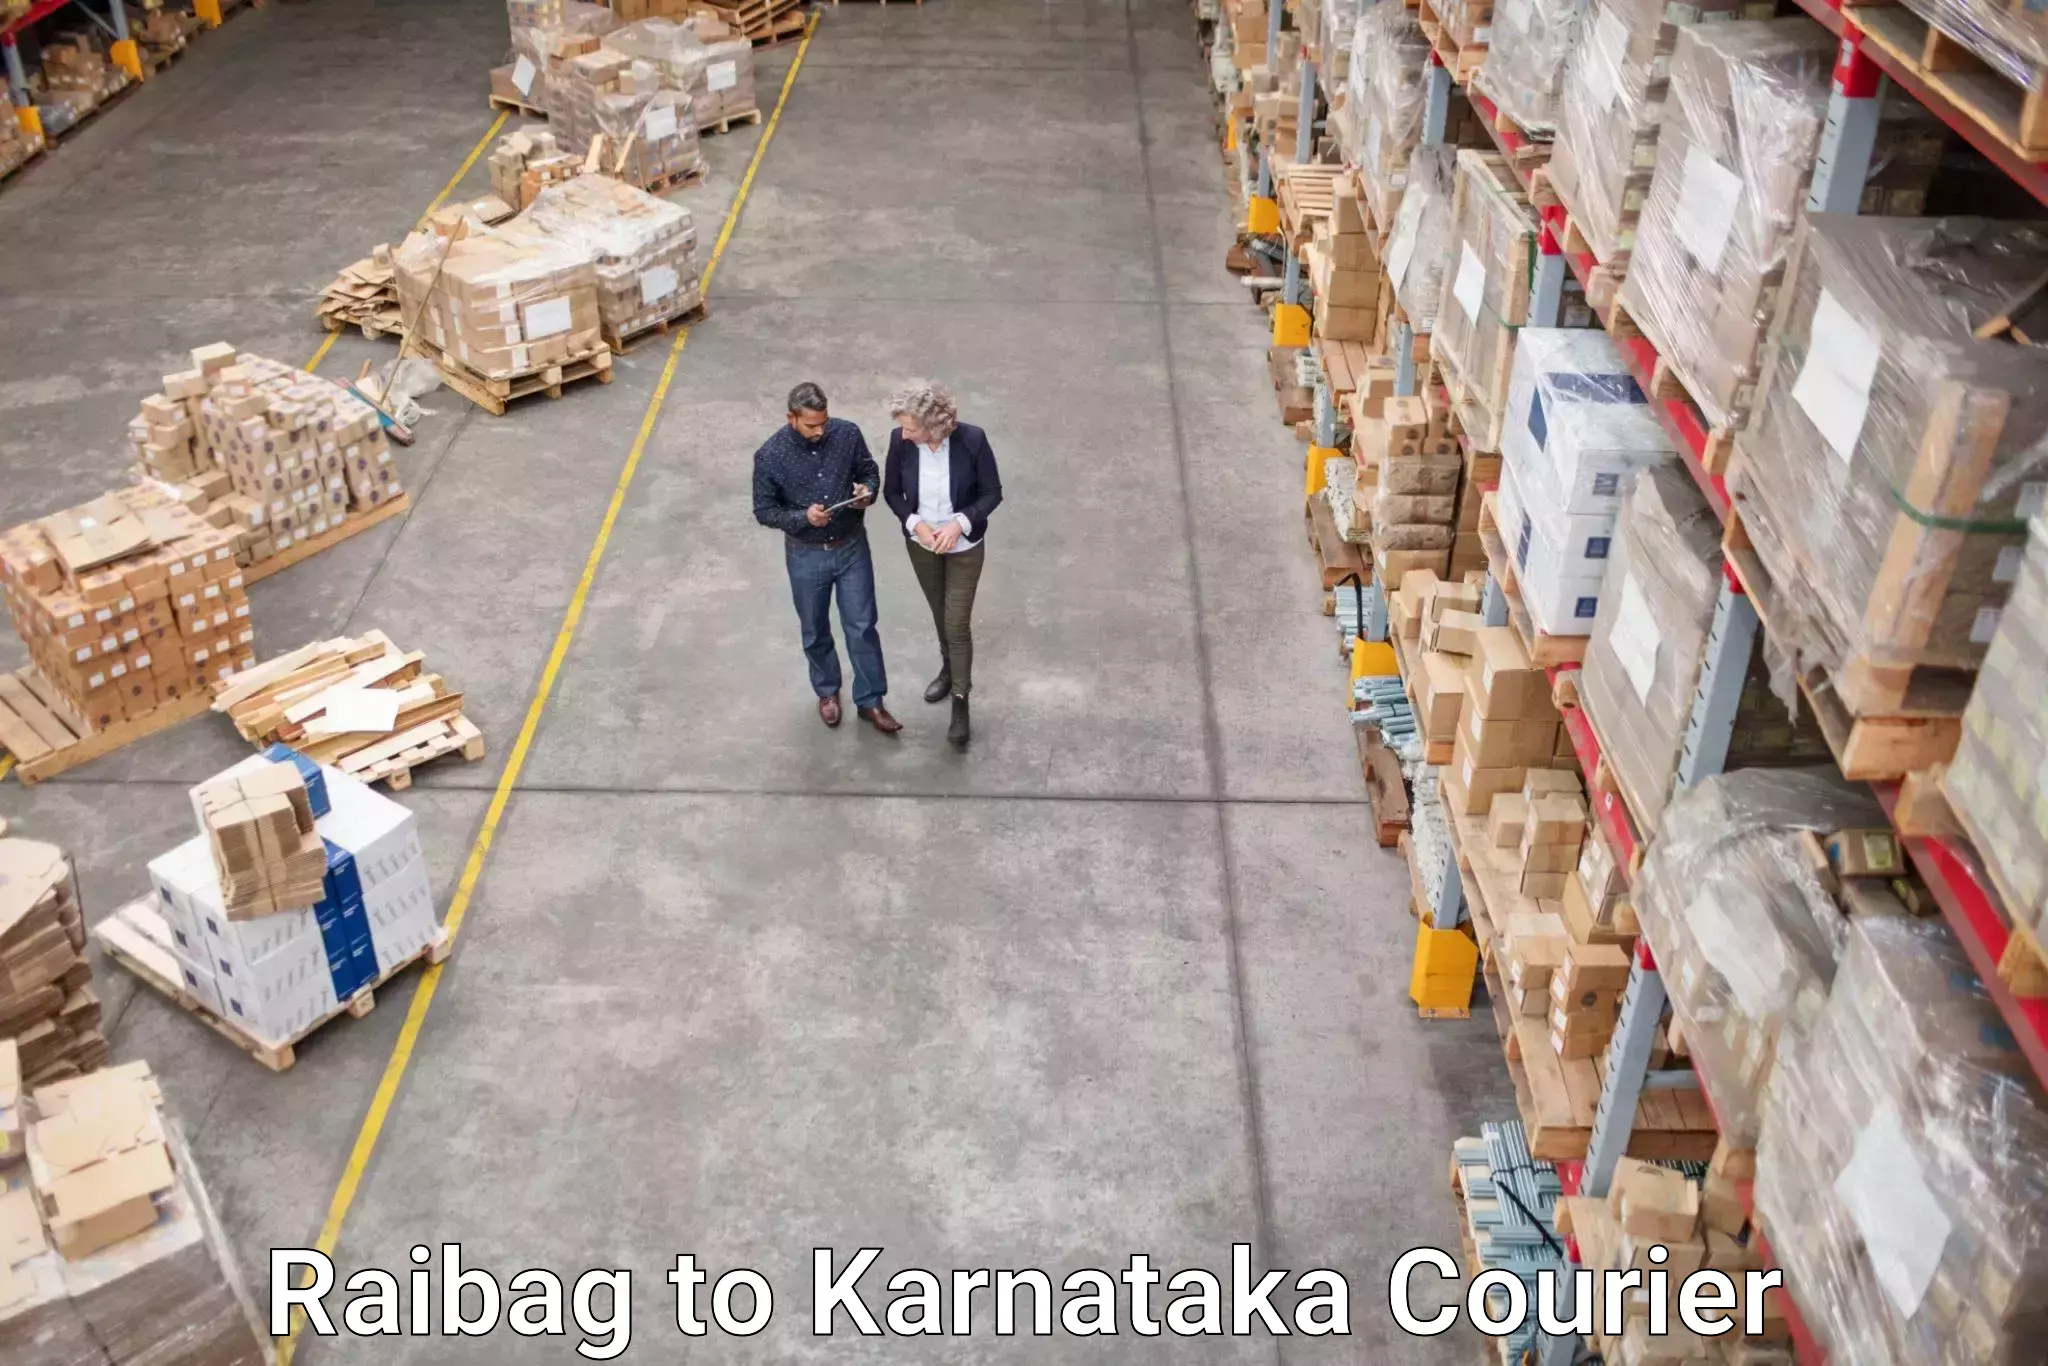 Logistics service provider Raibag to Karnataka